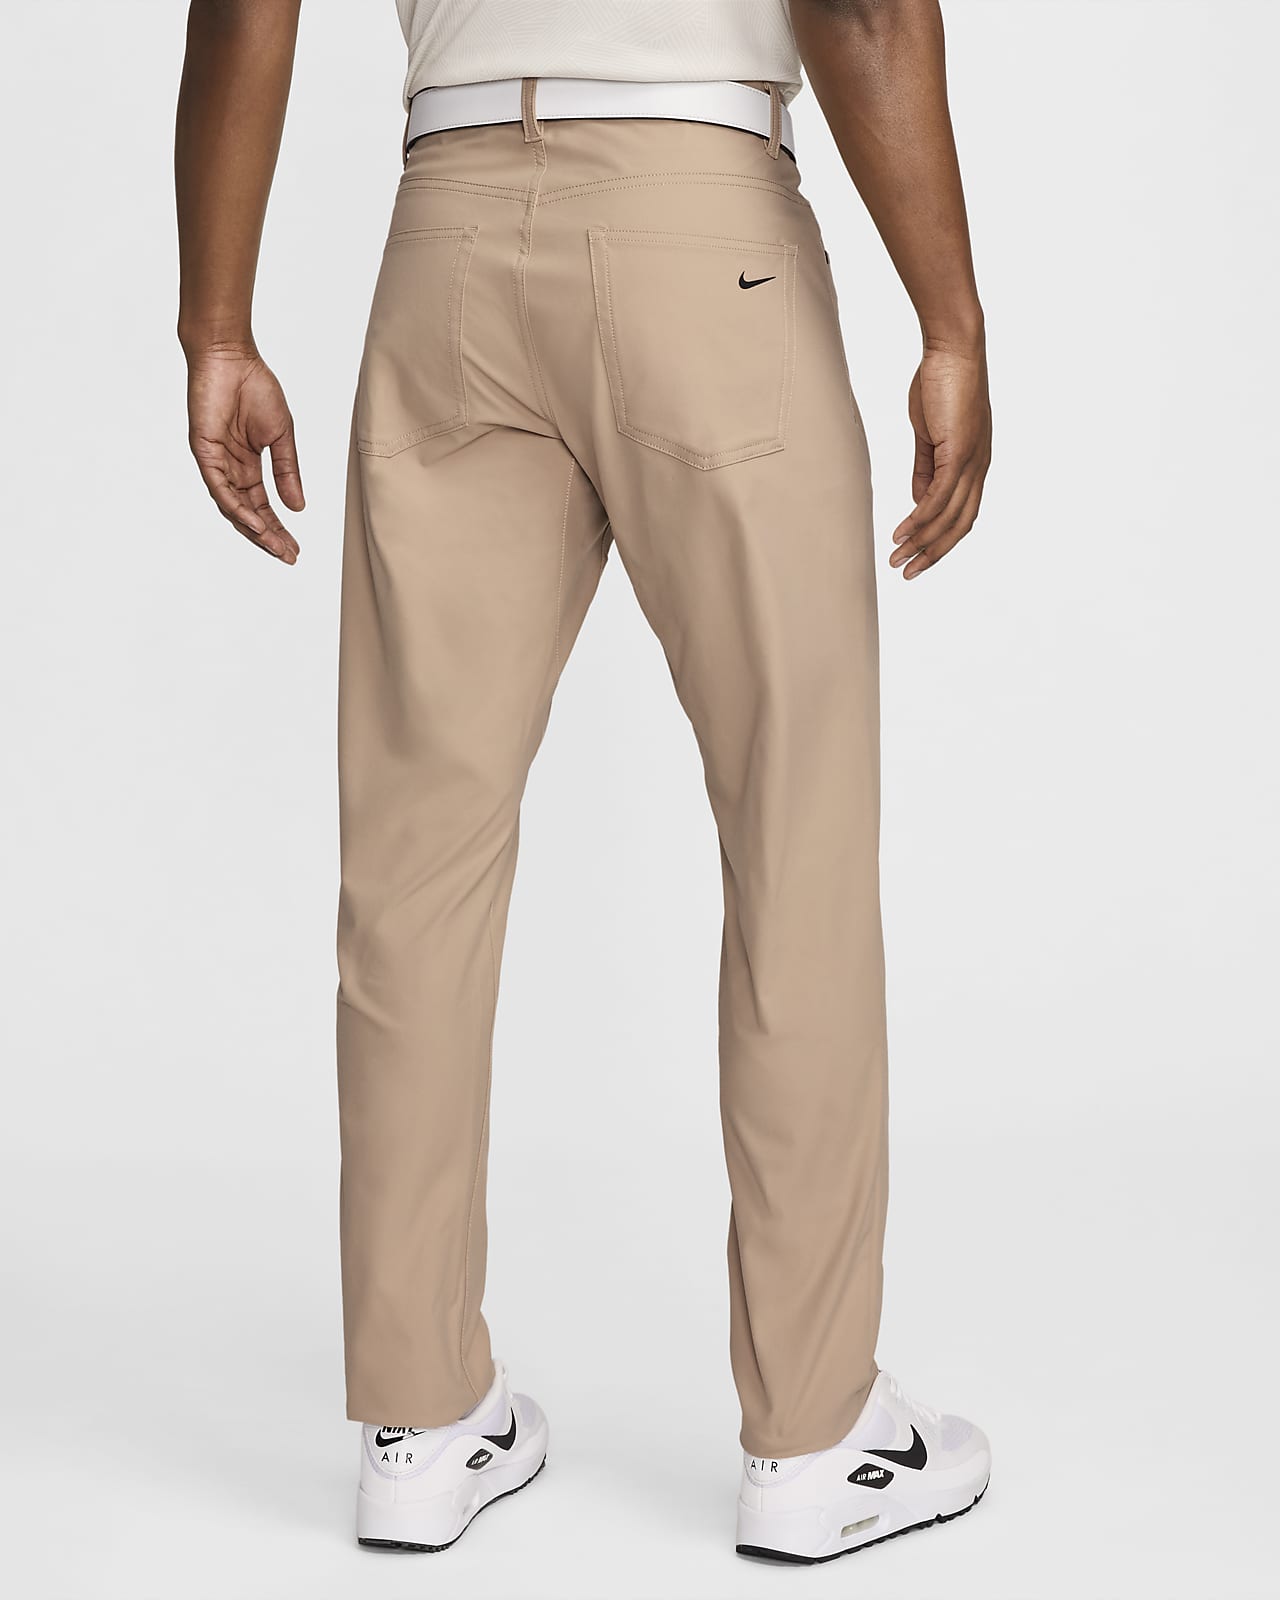 Nuevos pantalones de vestir 🎩 ¿Con cuál se quedarían? 👀 El Nike golf